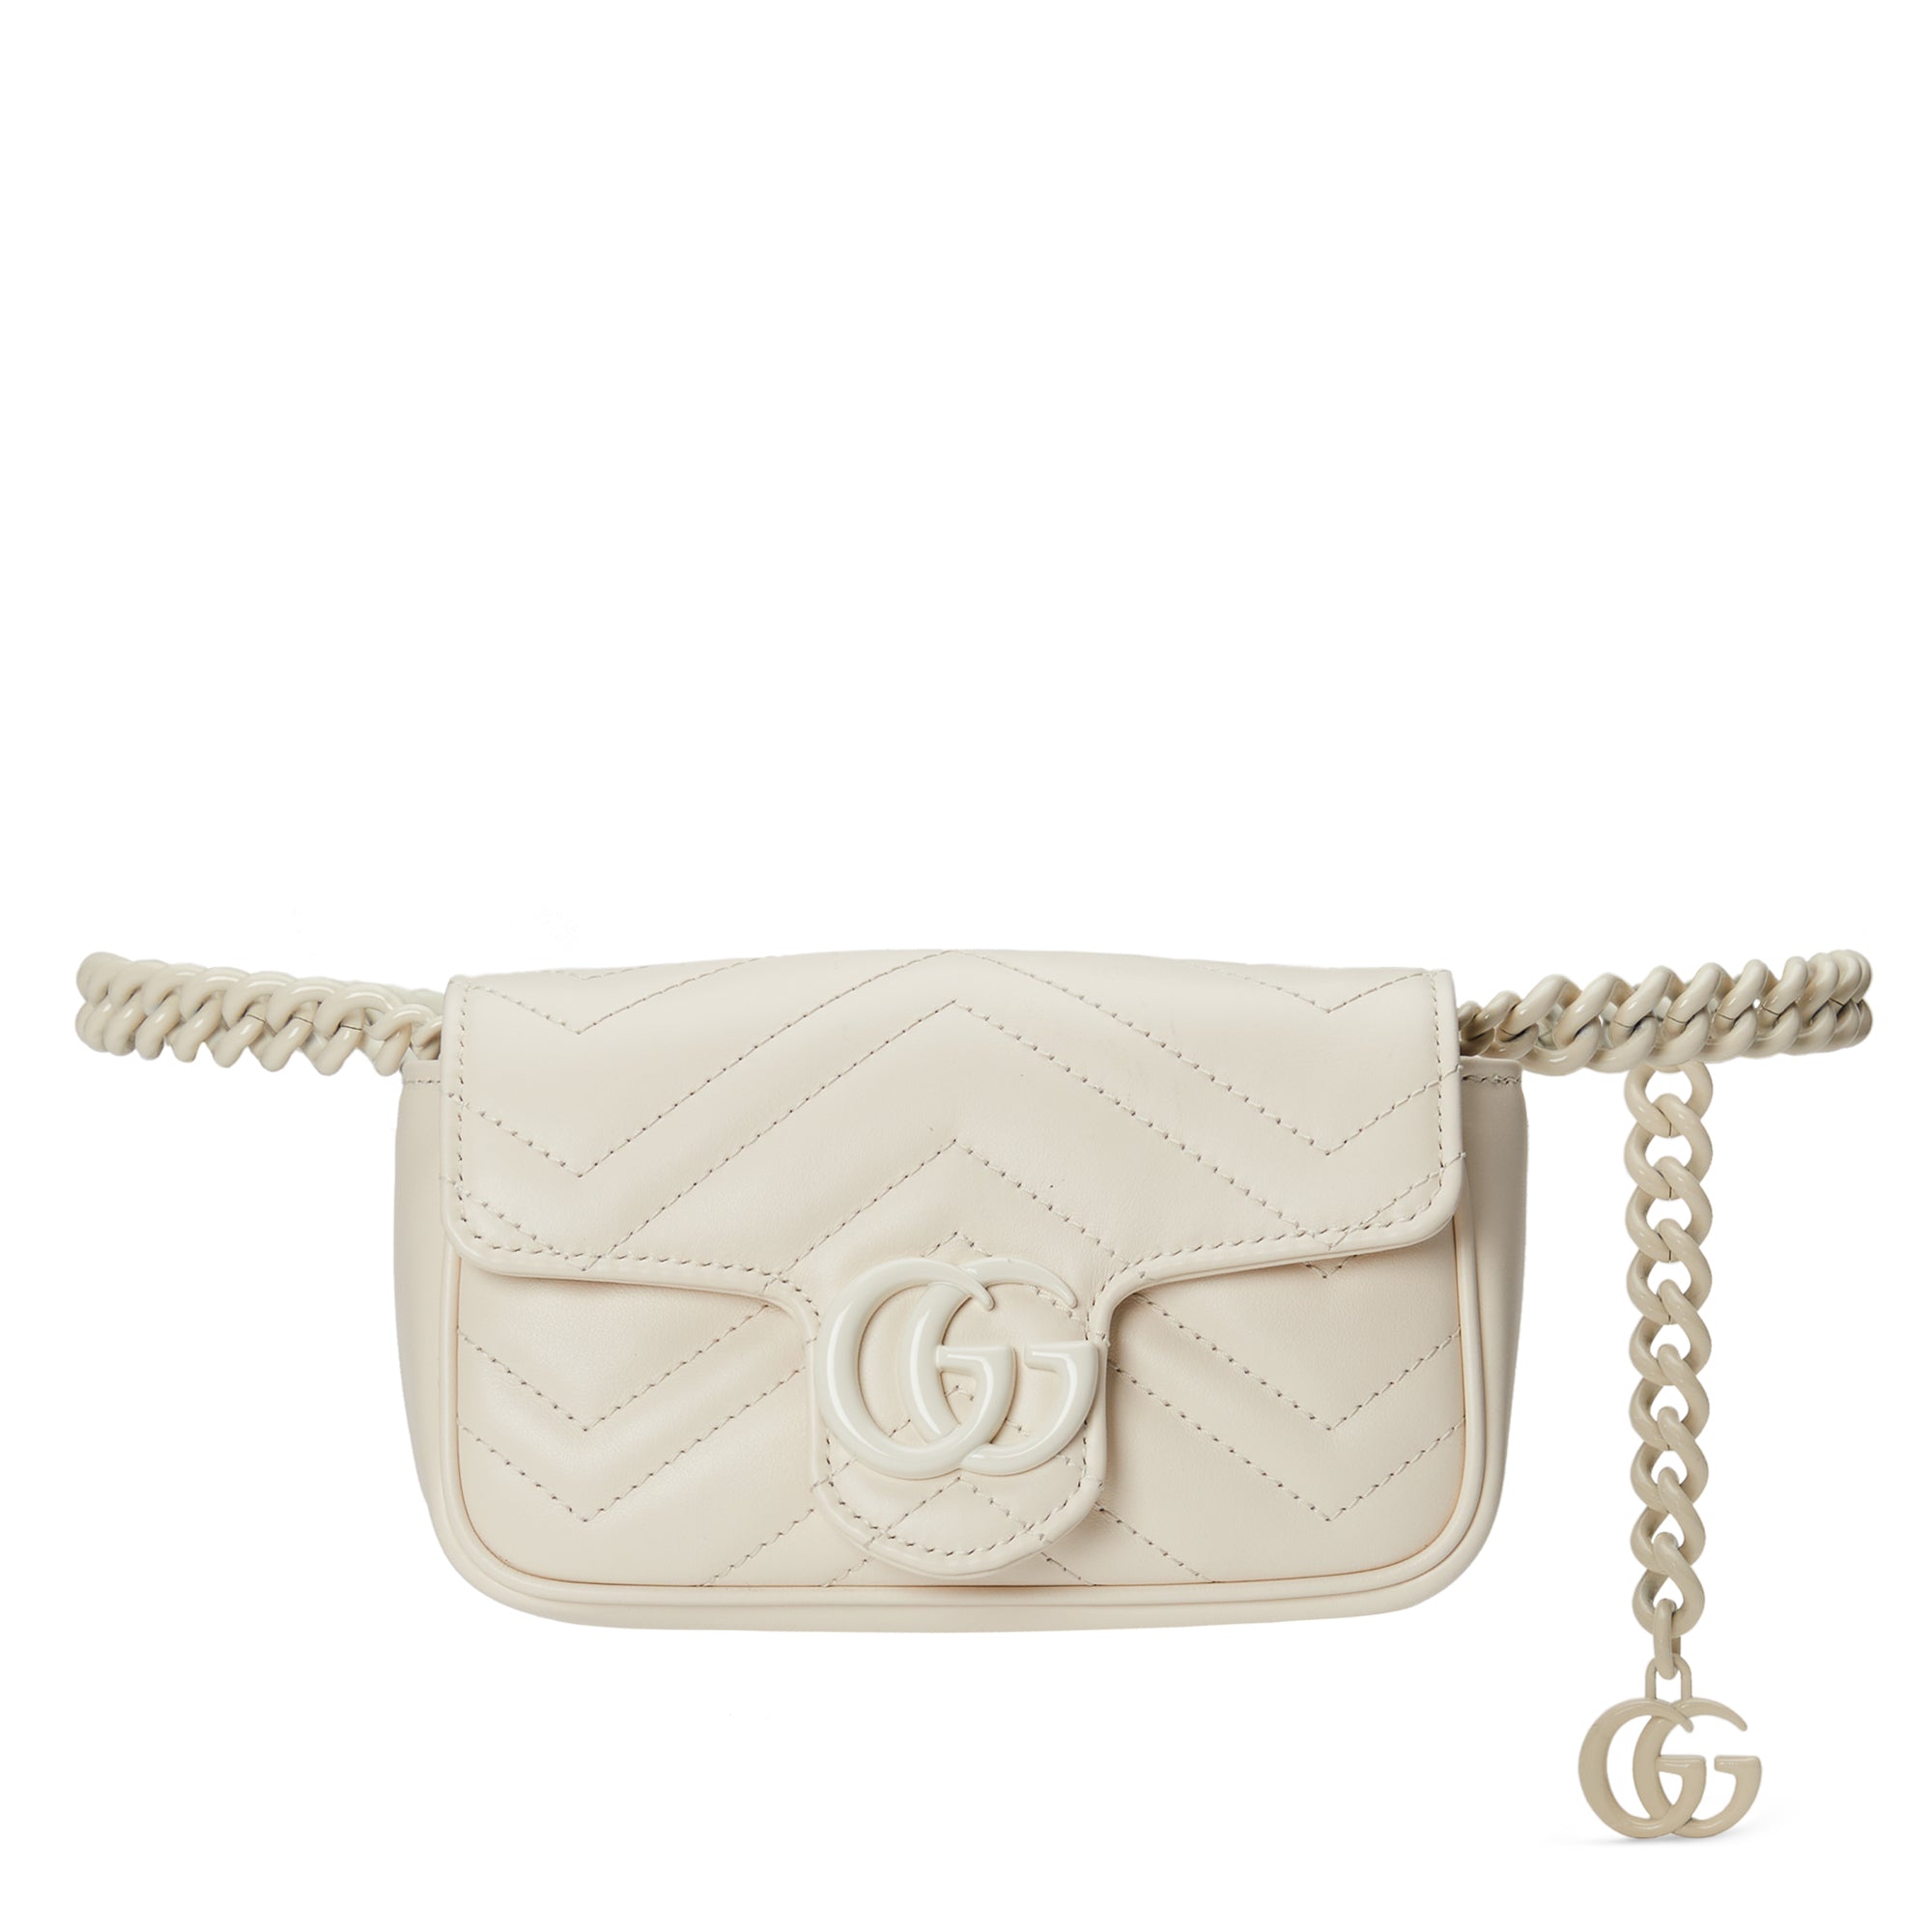 Gucci GG Marmont Matelassé Leather Super Mini Bag in White Chevron